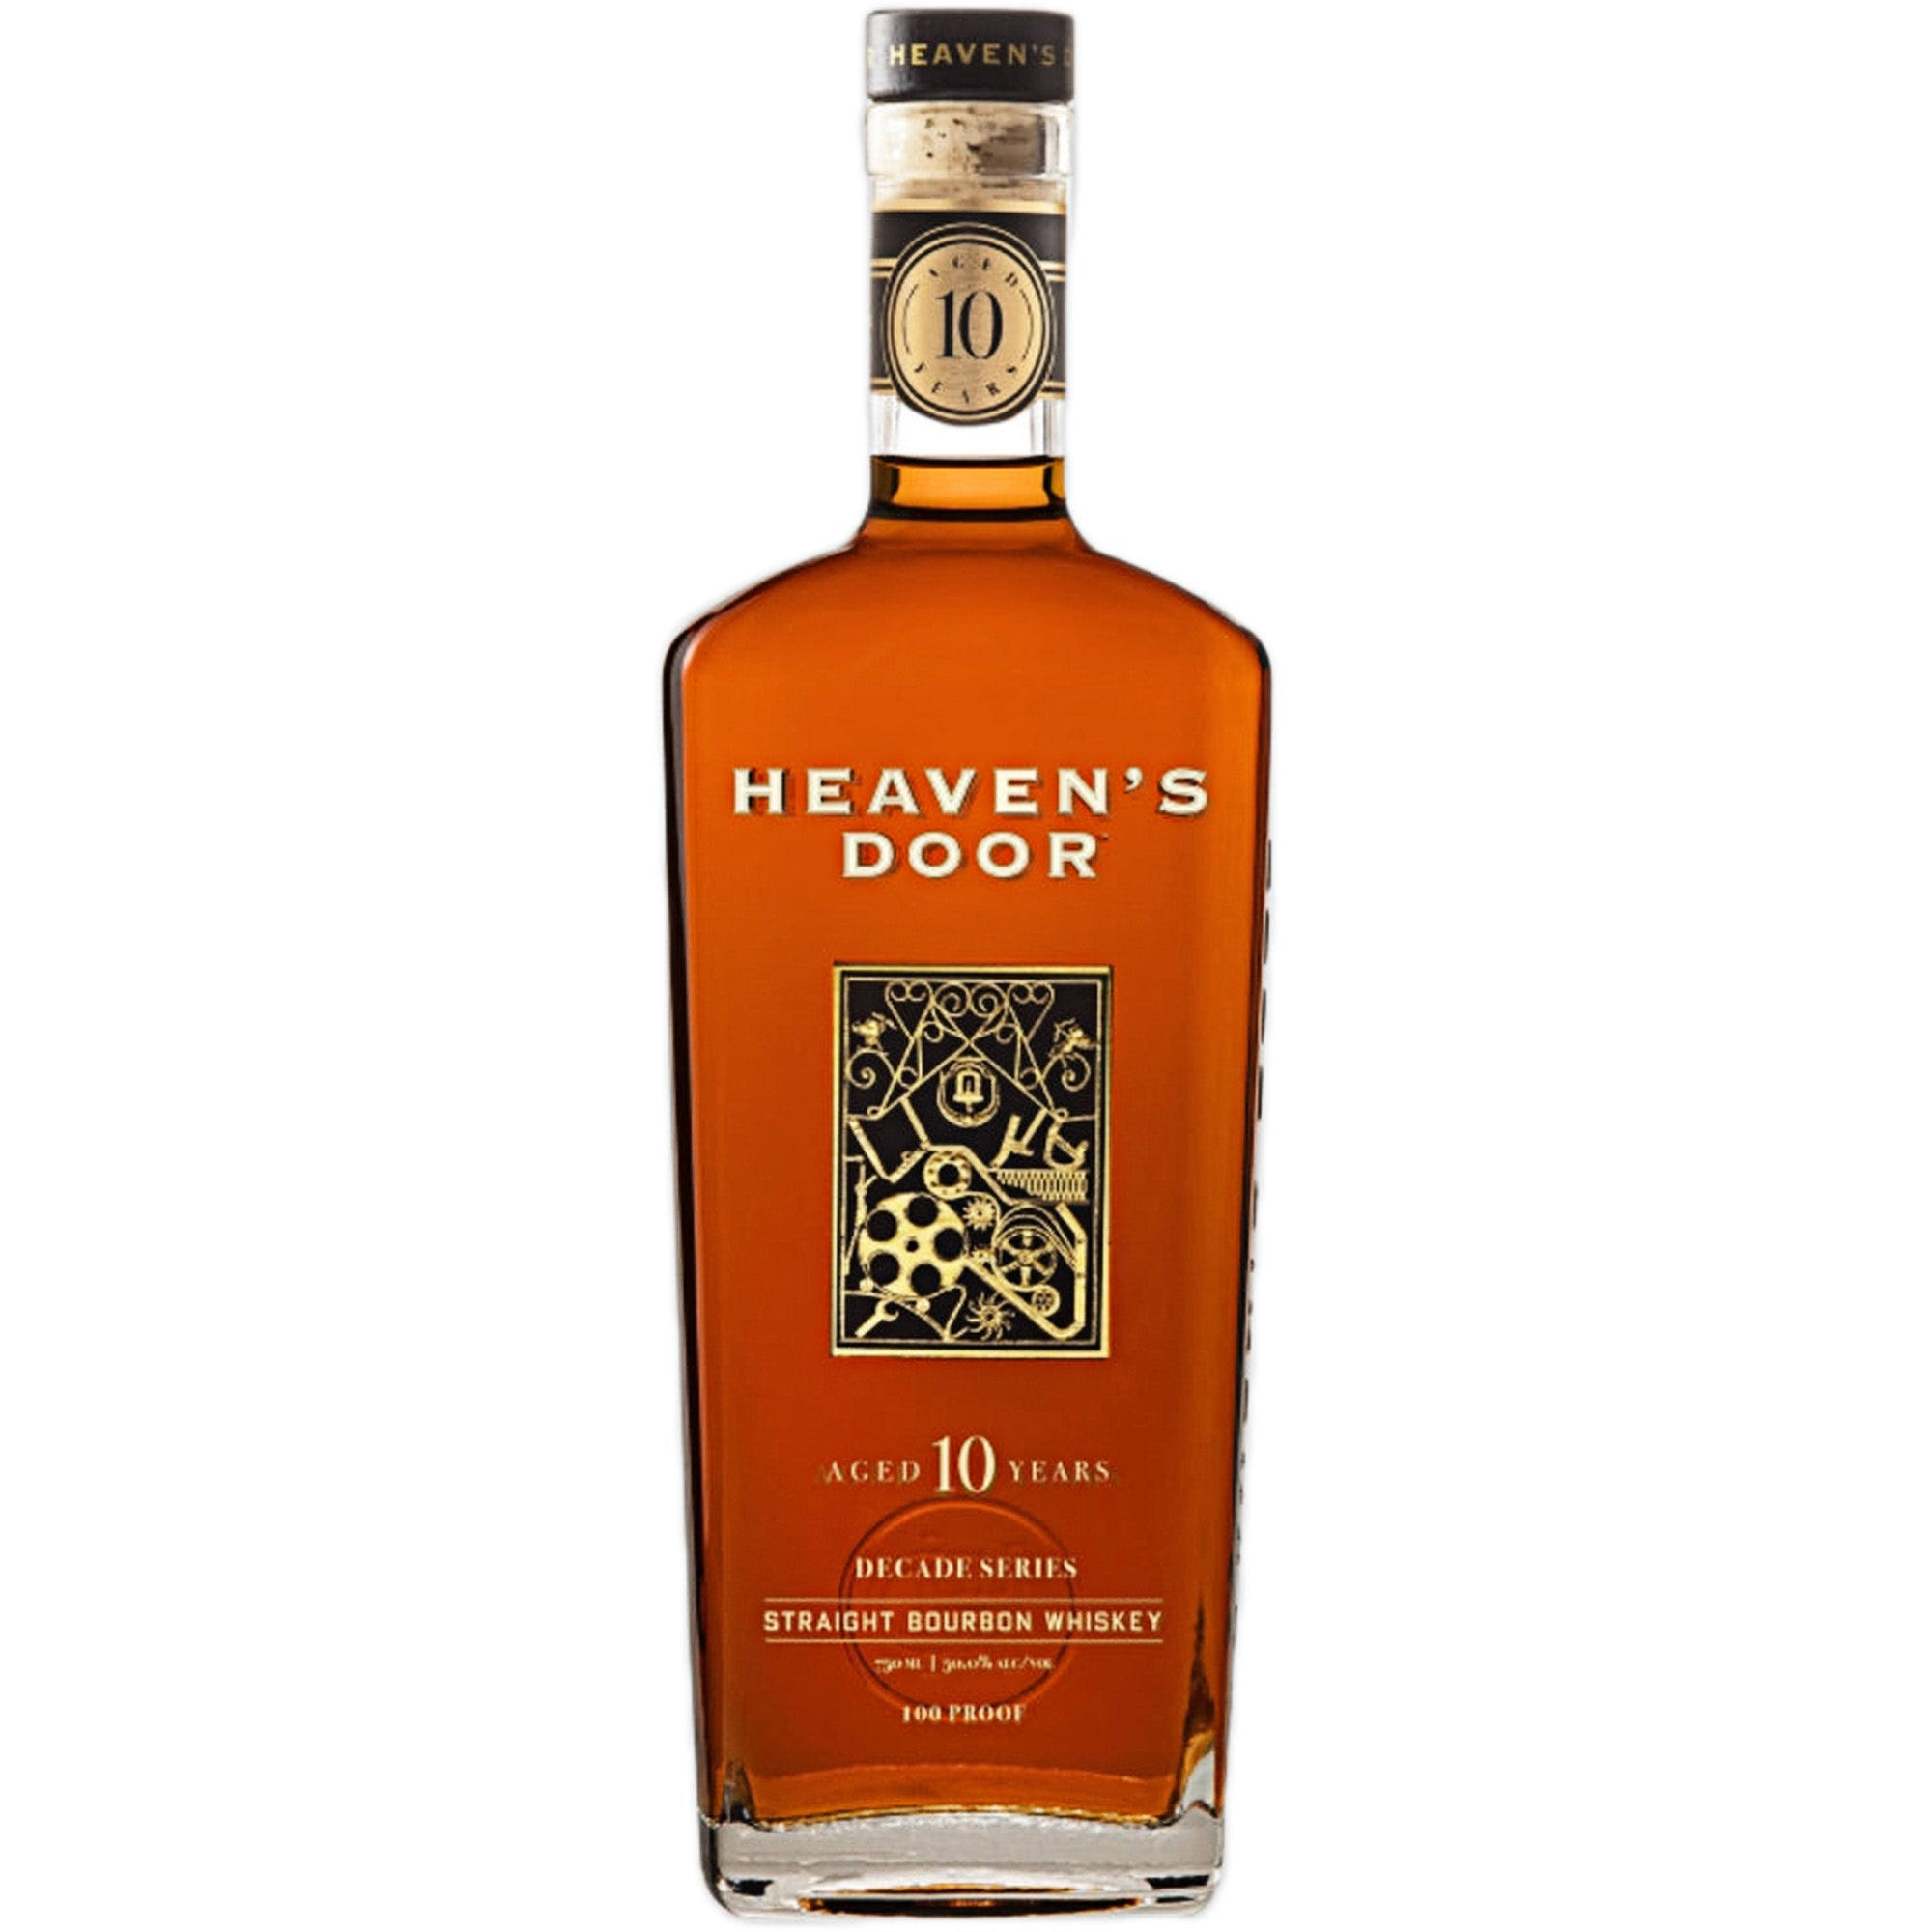 Heaven's Door Decade Series Release #01: Straight Bourbon Whiskey